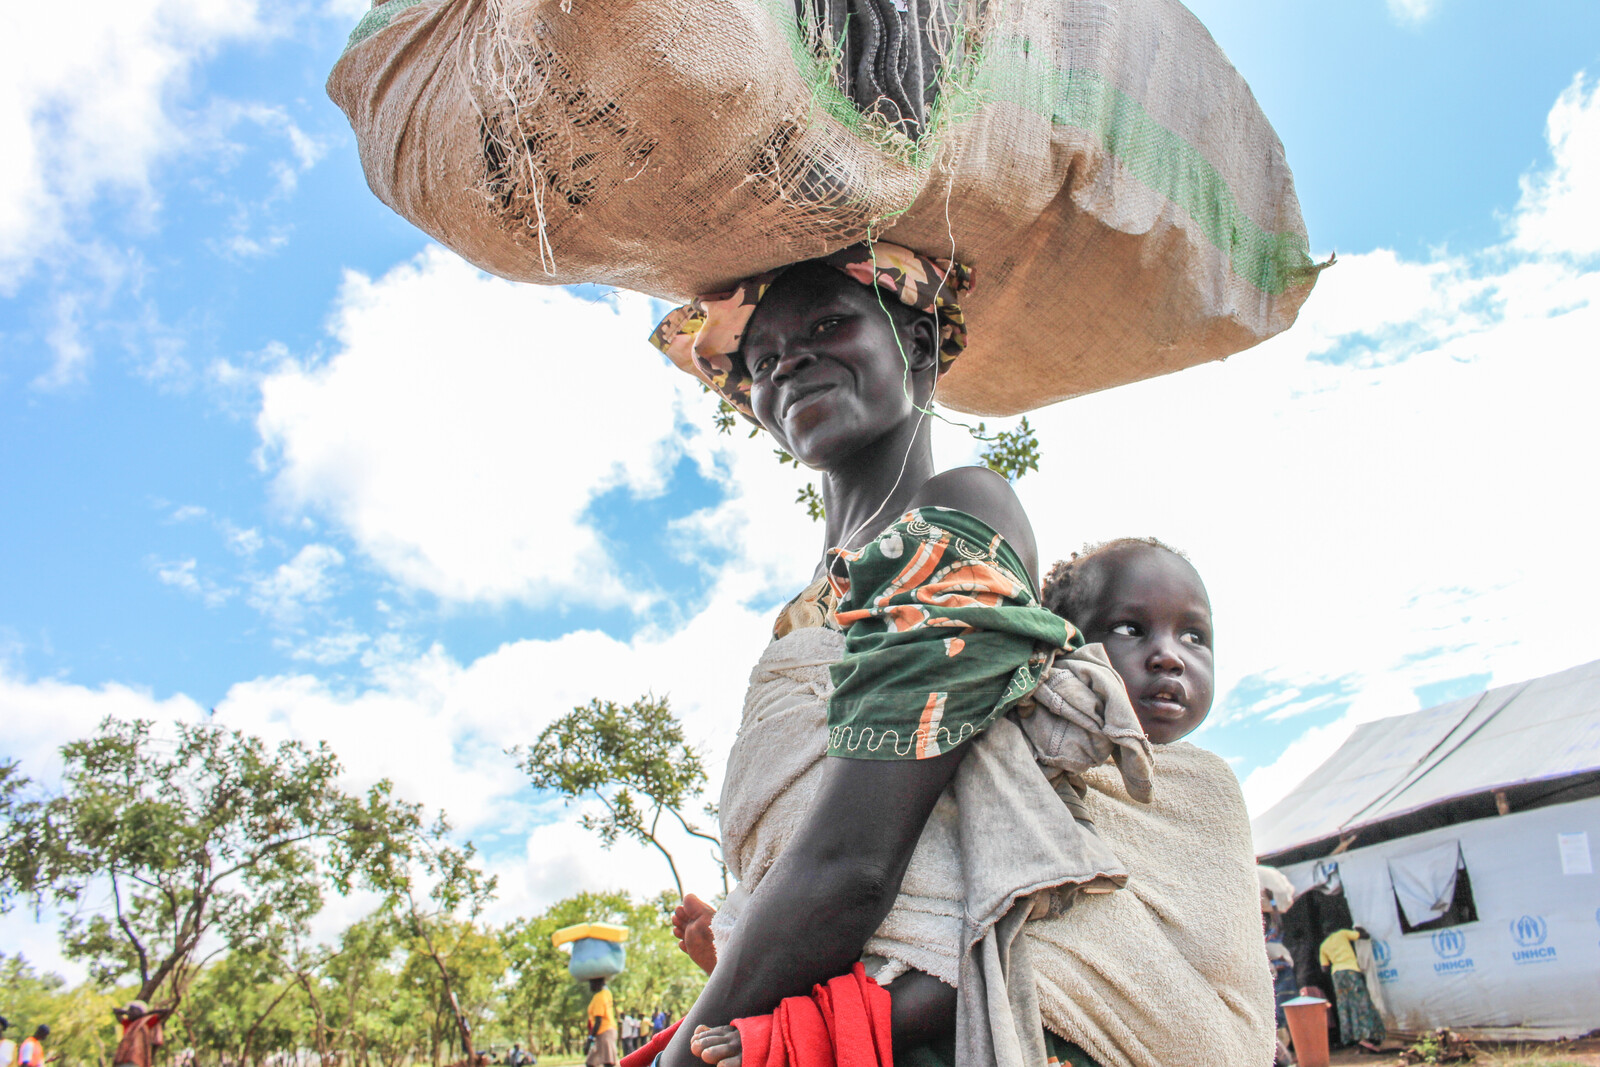 Eine Frau und ihr kleines Kind haben es geschafft - sie sind vor Hunger und Gewalt im Südsudan geflohen und sicher in Uganda angekommen